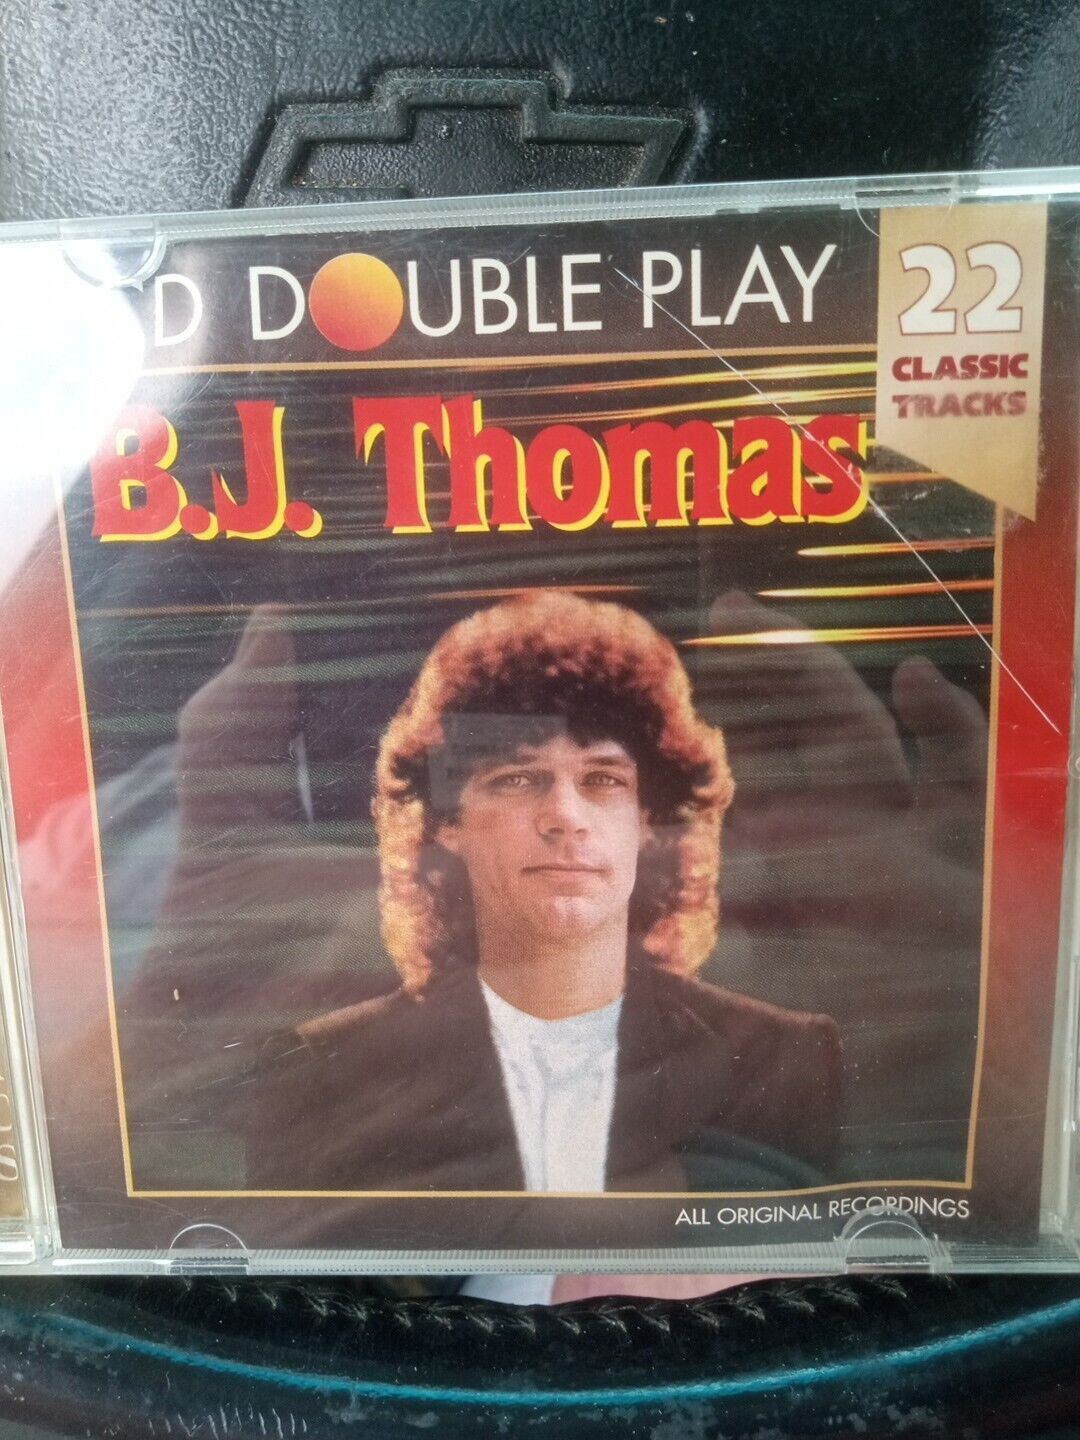 B J THOMAS - B.j. Thomas. 22 Classic Tracks. Double Play - CD - Like New - Nice